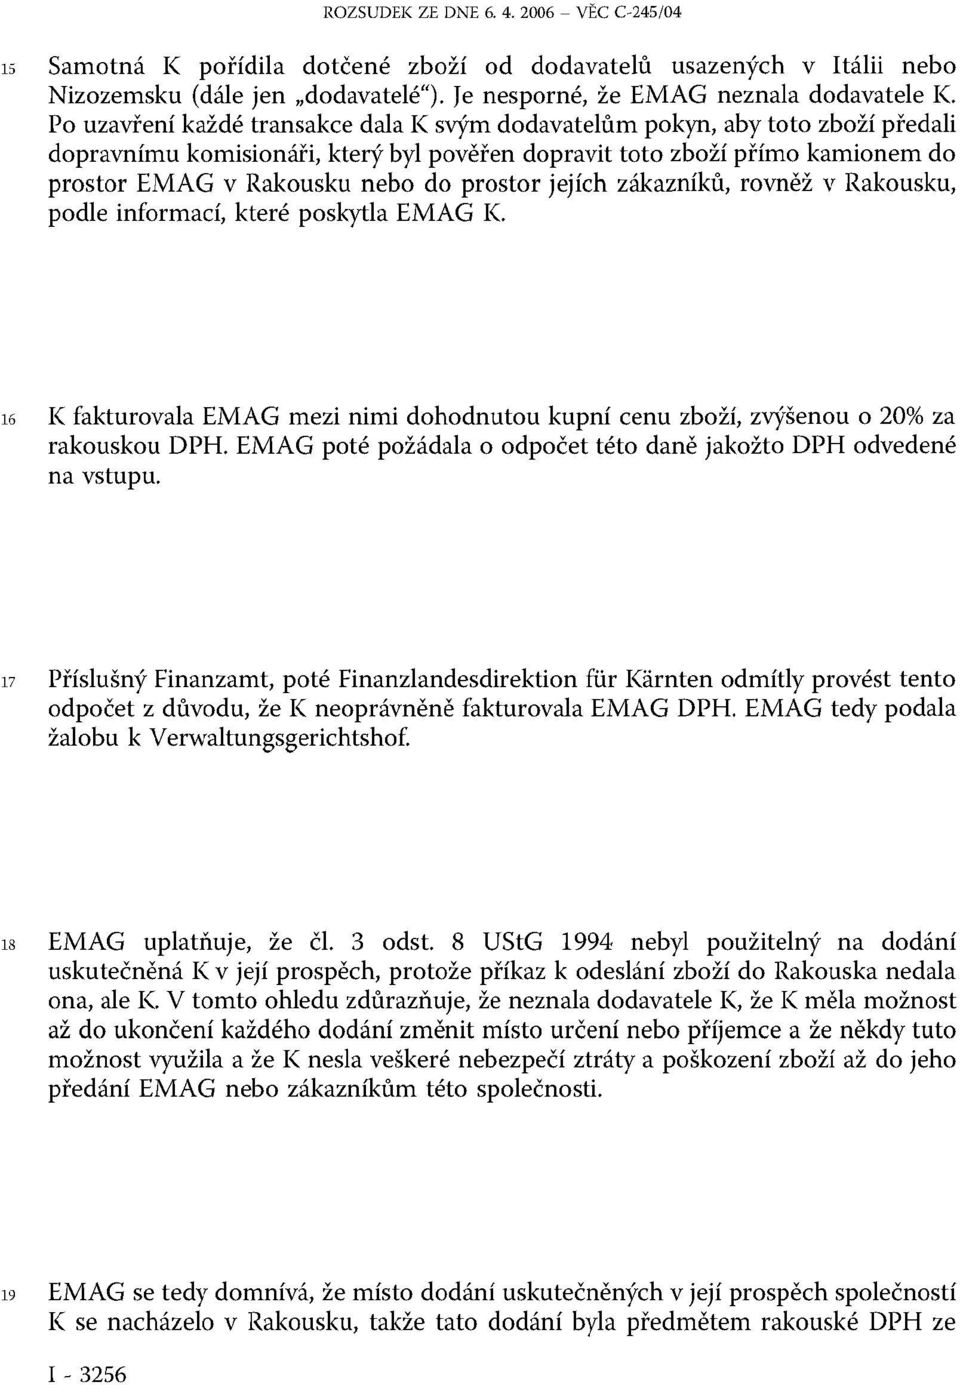 prostor jejích zákazníků, rovněž v Rakousku, podle informací, které poskytla EMAG K. 16 K fakturovala EMAG mezi nimi dohodnutou kupní cenu zboží, zvýšenou o 20% za rakouskou DPH.